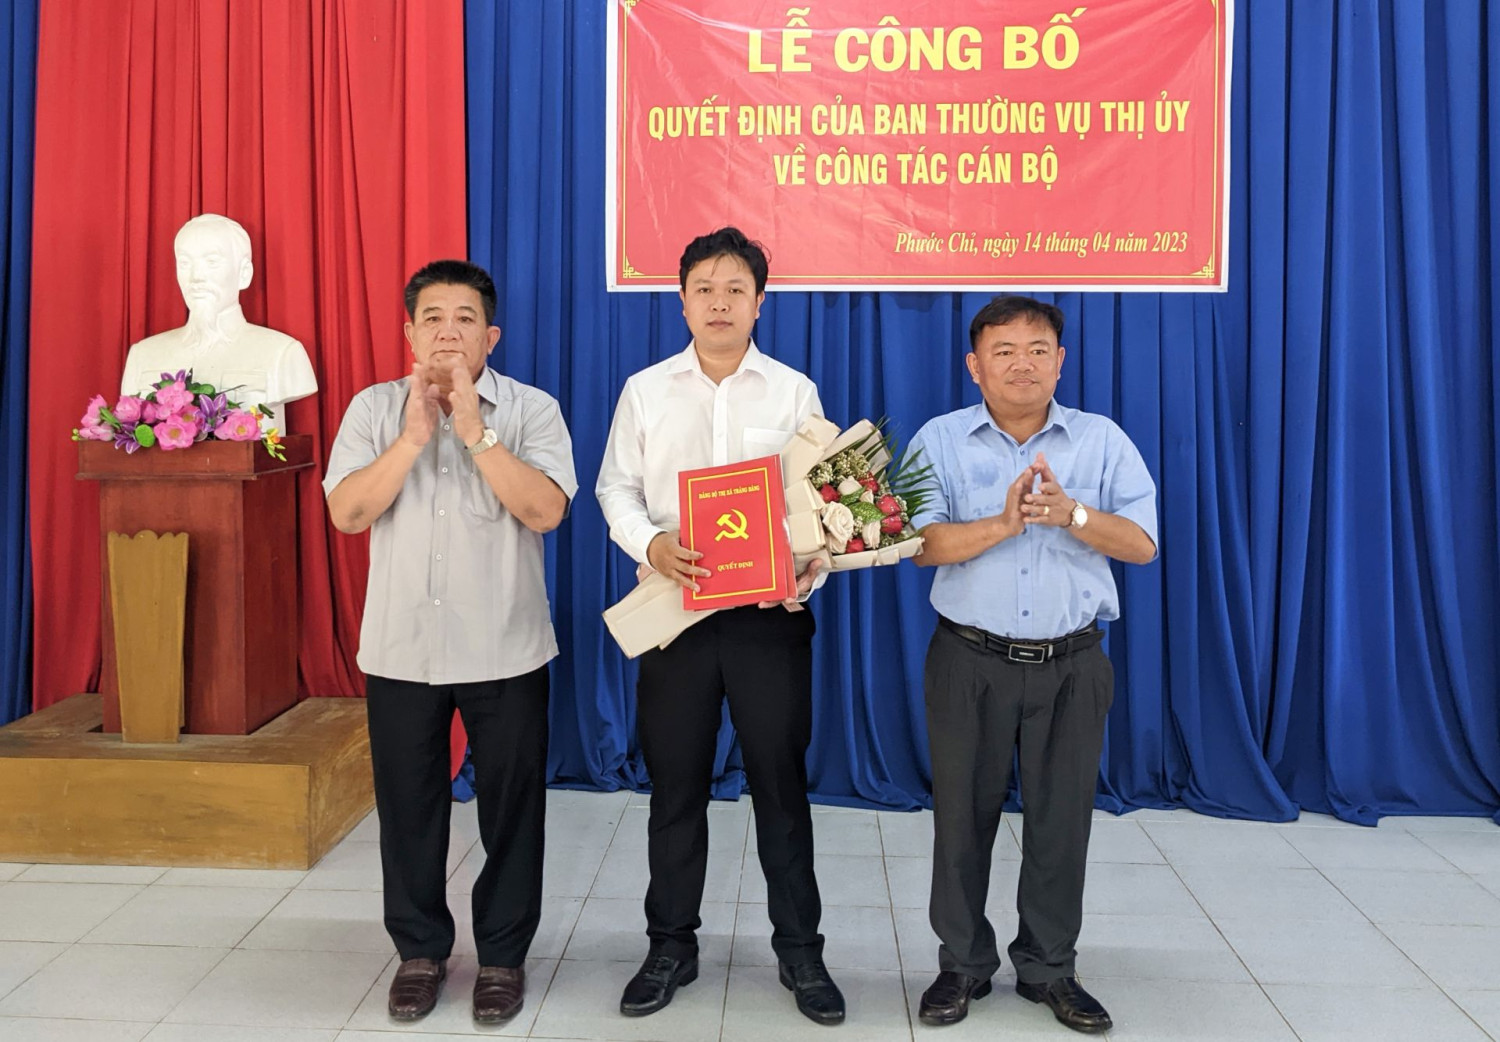 Bí thư Thị uỷ Trảng Bàng Võ Văn Dũng (bìa trái) và ông Hà Minh Dảo- Phó Chủ tịch UBND thị xã trao quyết định và tặng hoa cho ông Trần Minh Tùng.